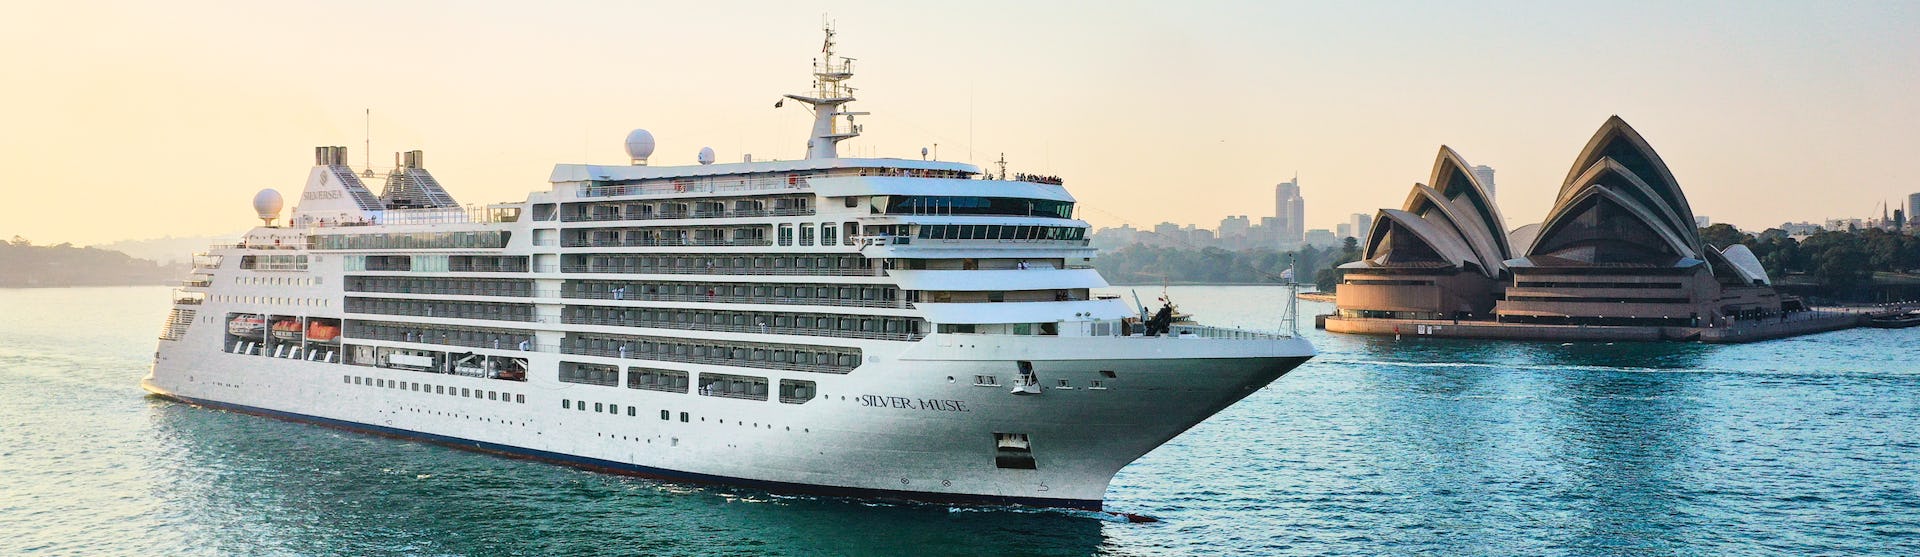 Kreuzfahrtschiff Silver Muse auf dem Wasser vor dem Sydney Opera House